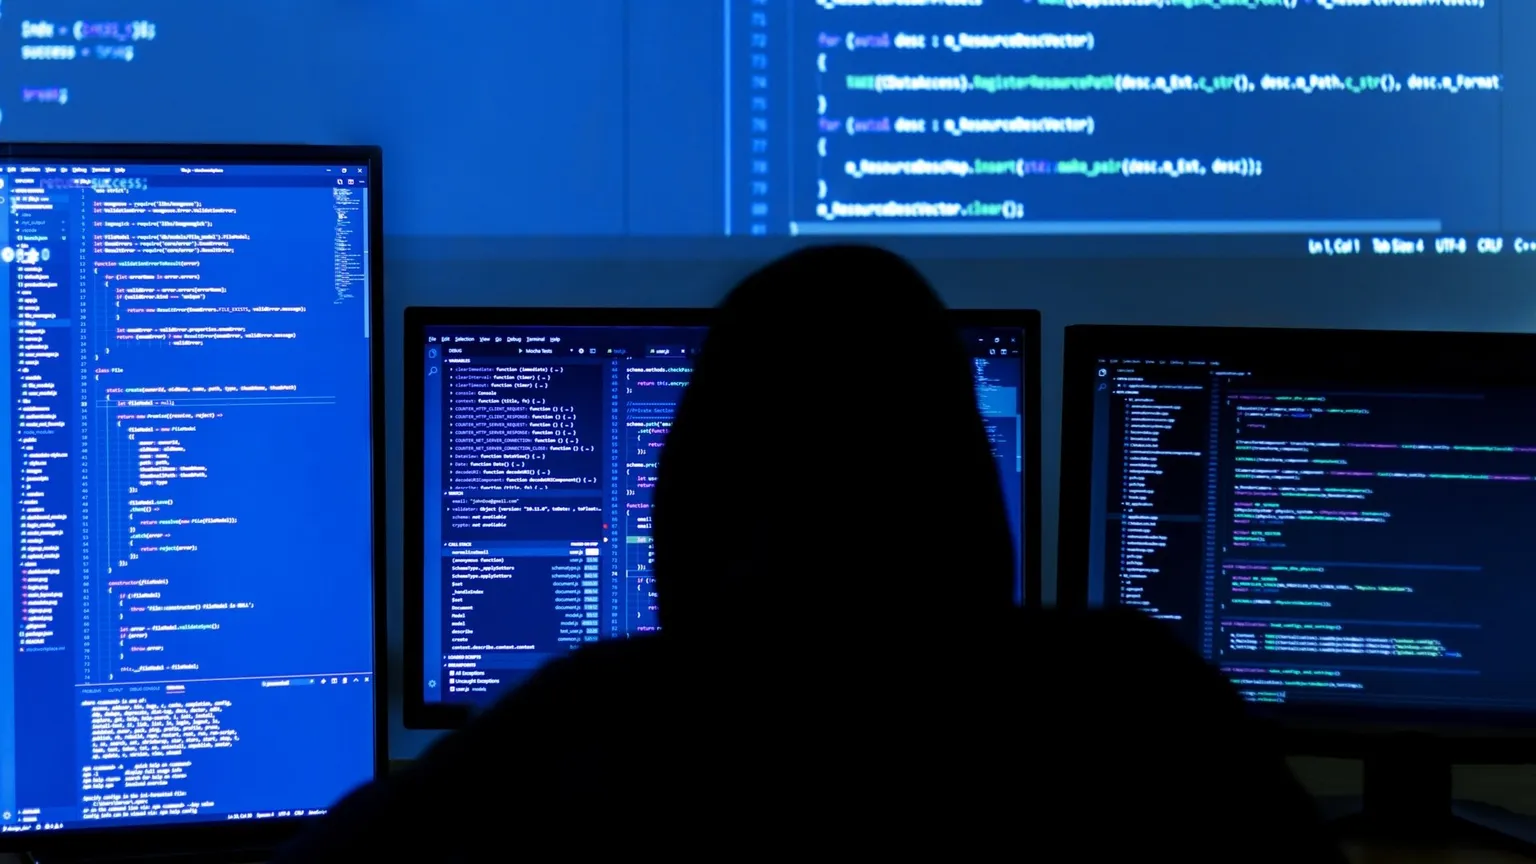 Un hacker ha filtrado miles de contraseñas y correos electrónicos de la web oscura. Imagen: Shutterstock 